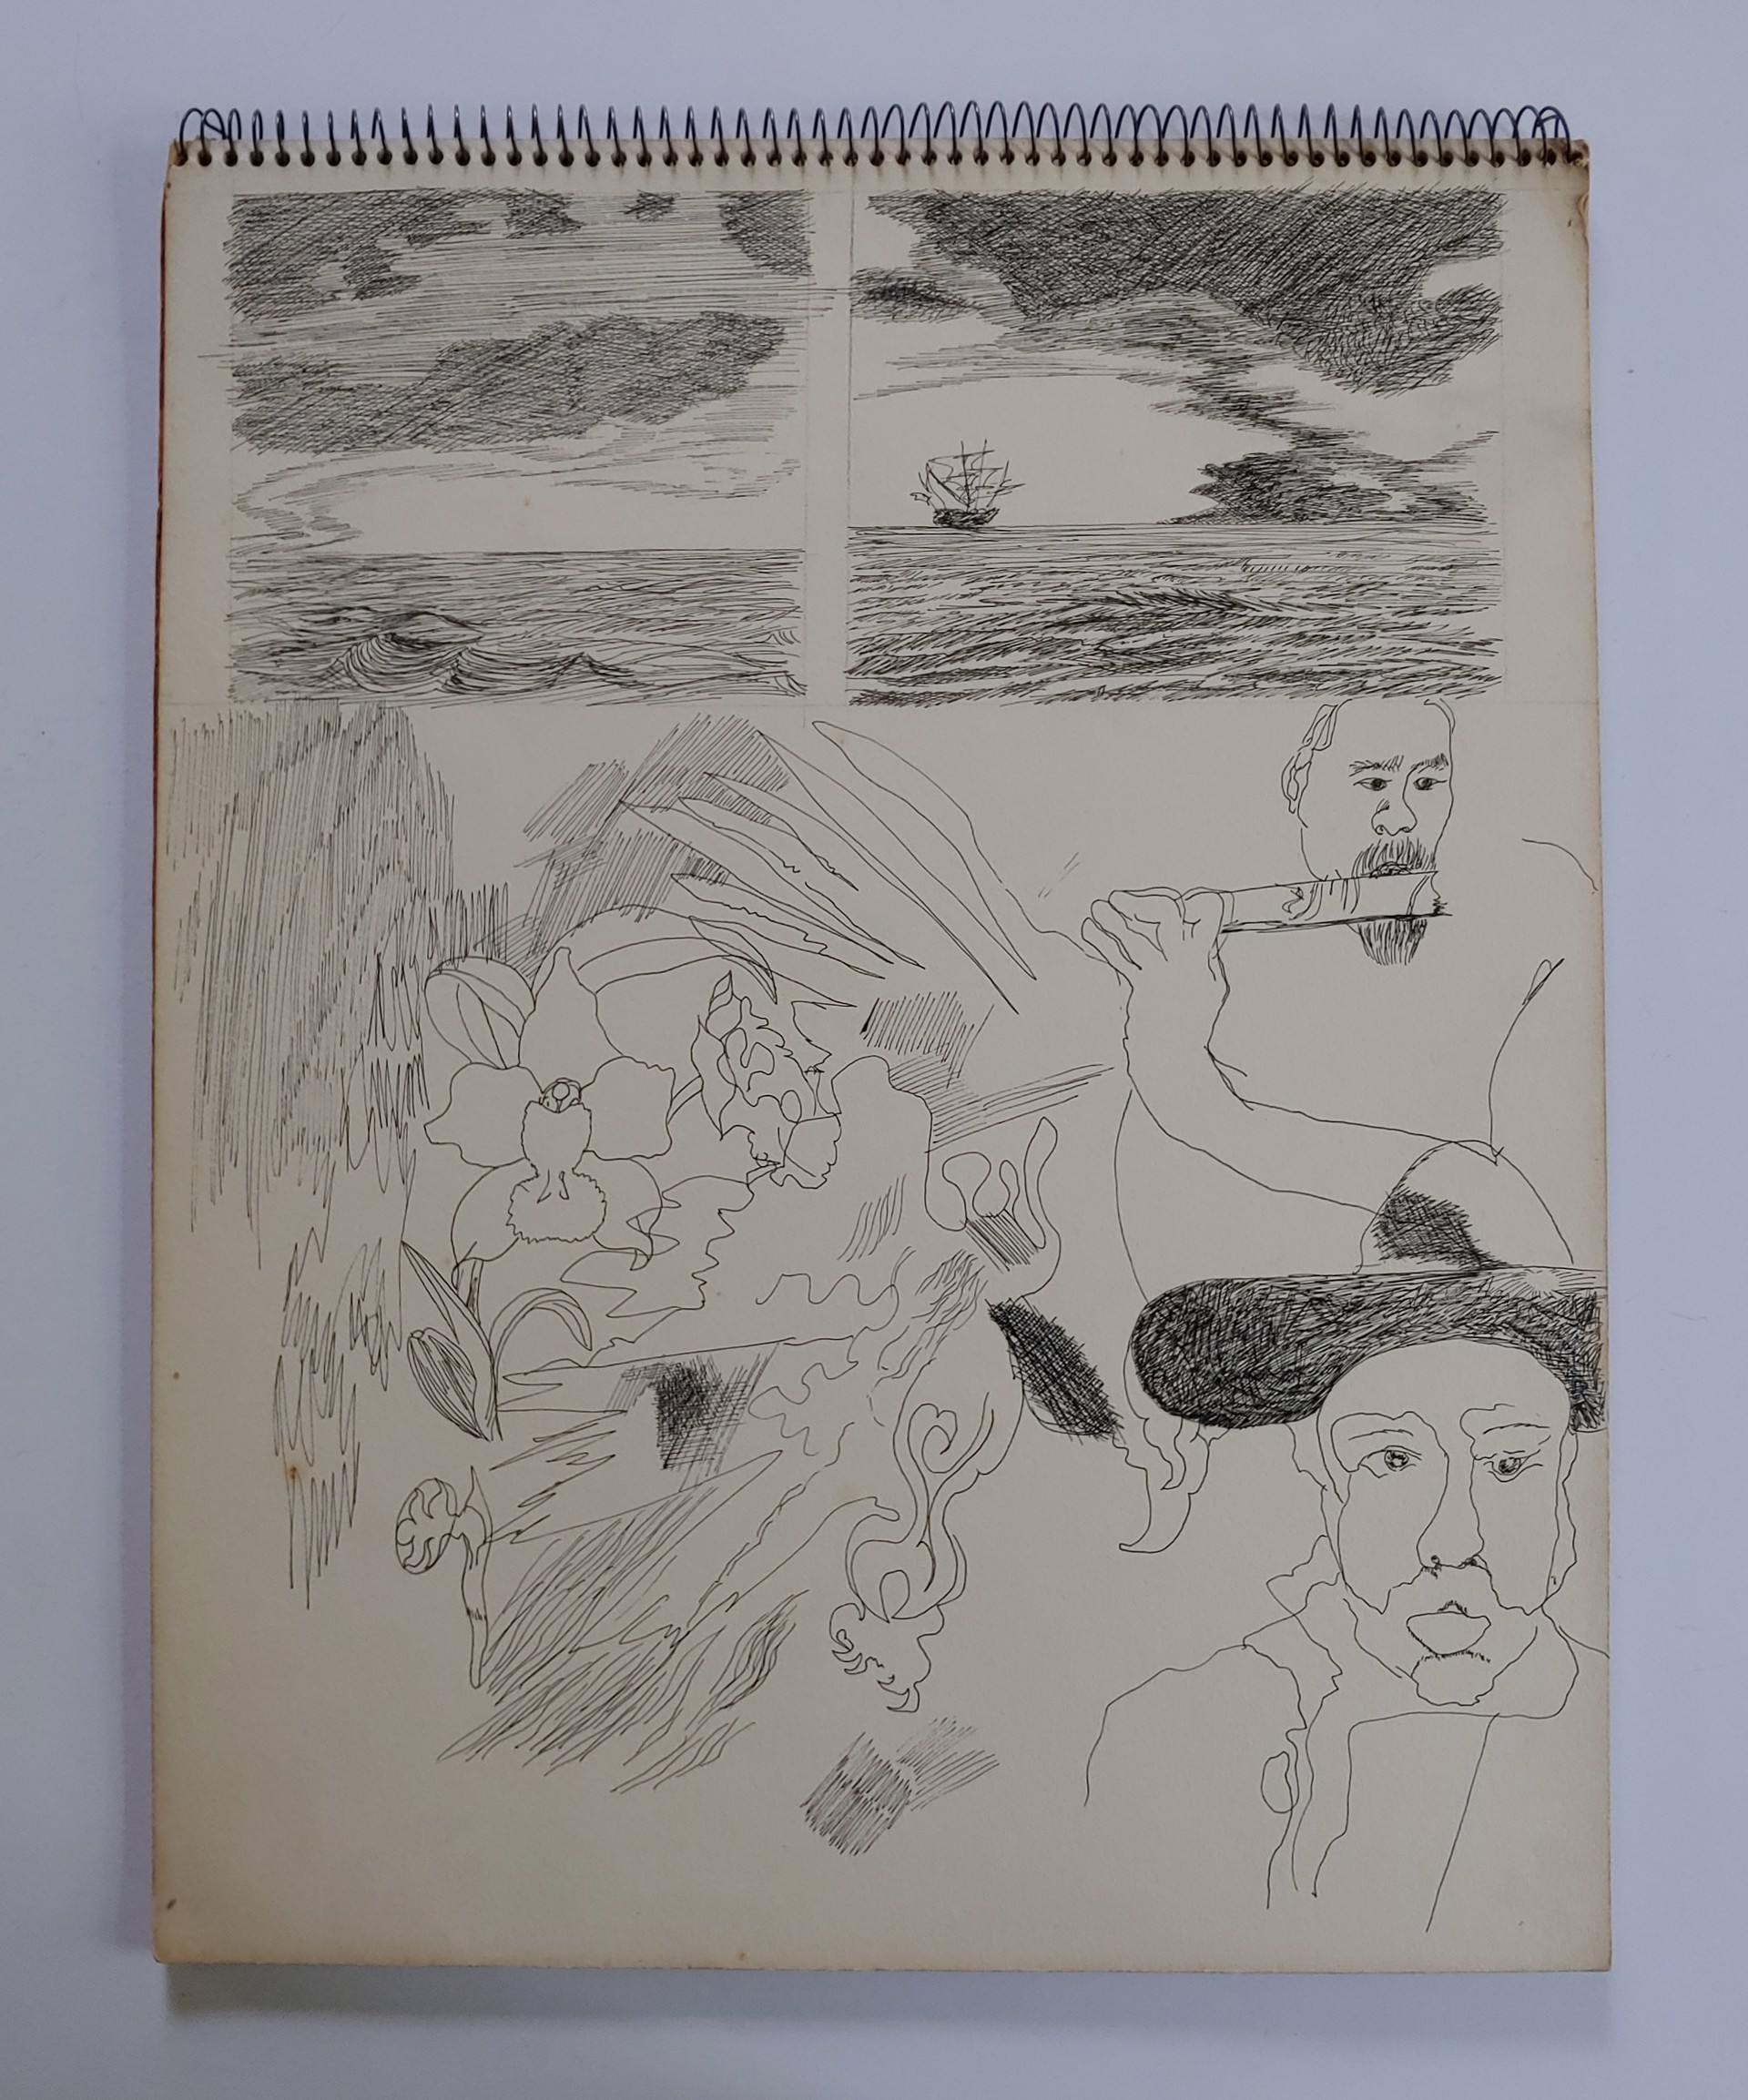 1975 Sketchbook by David Amdur